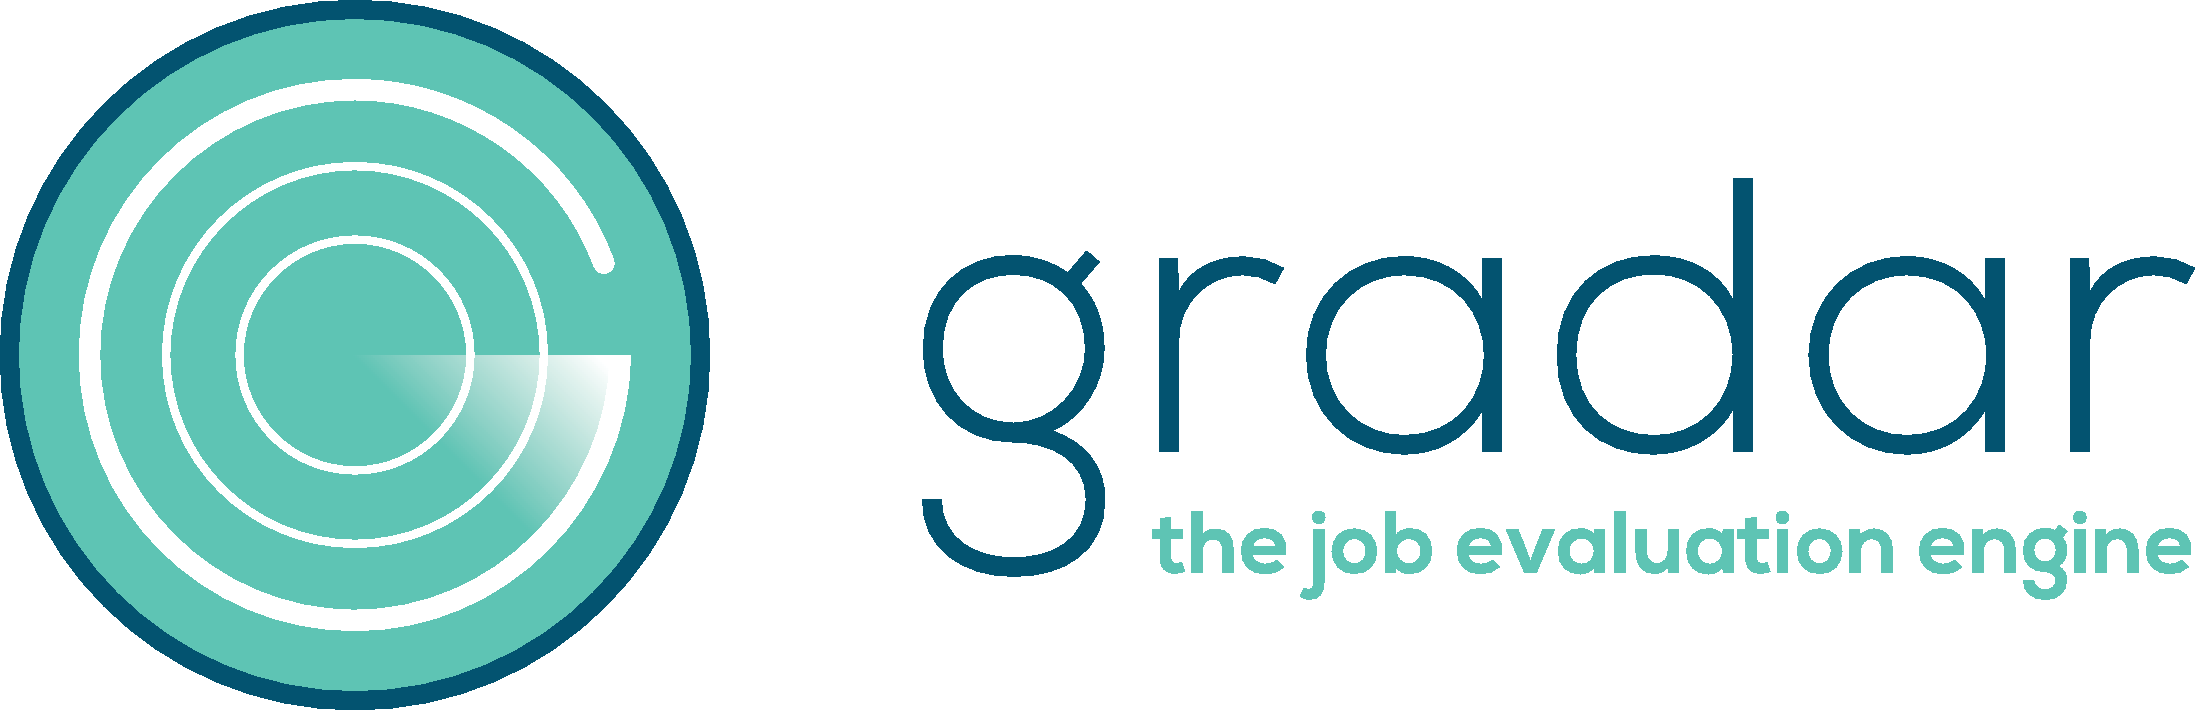 gradar the job evaluation engine